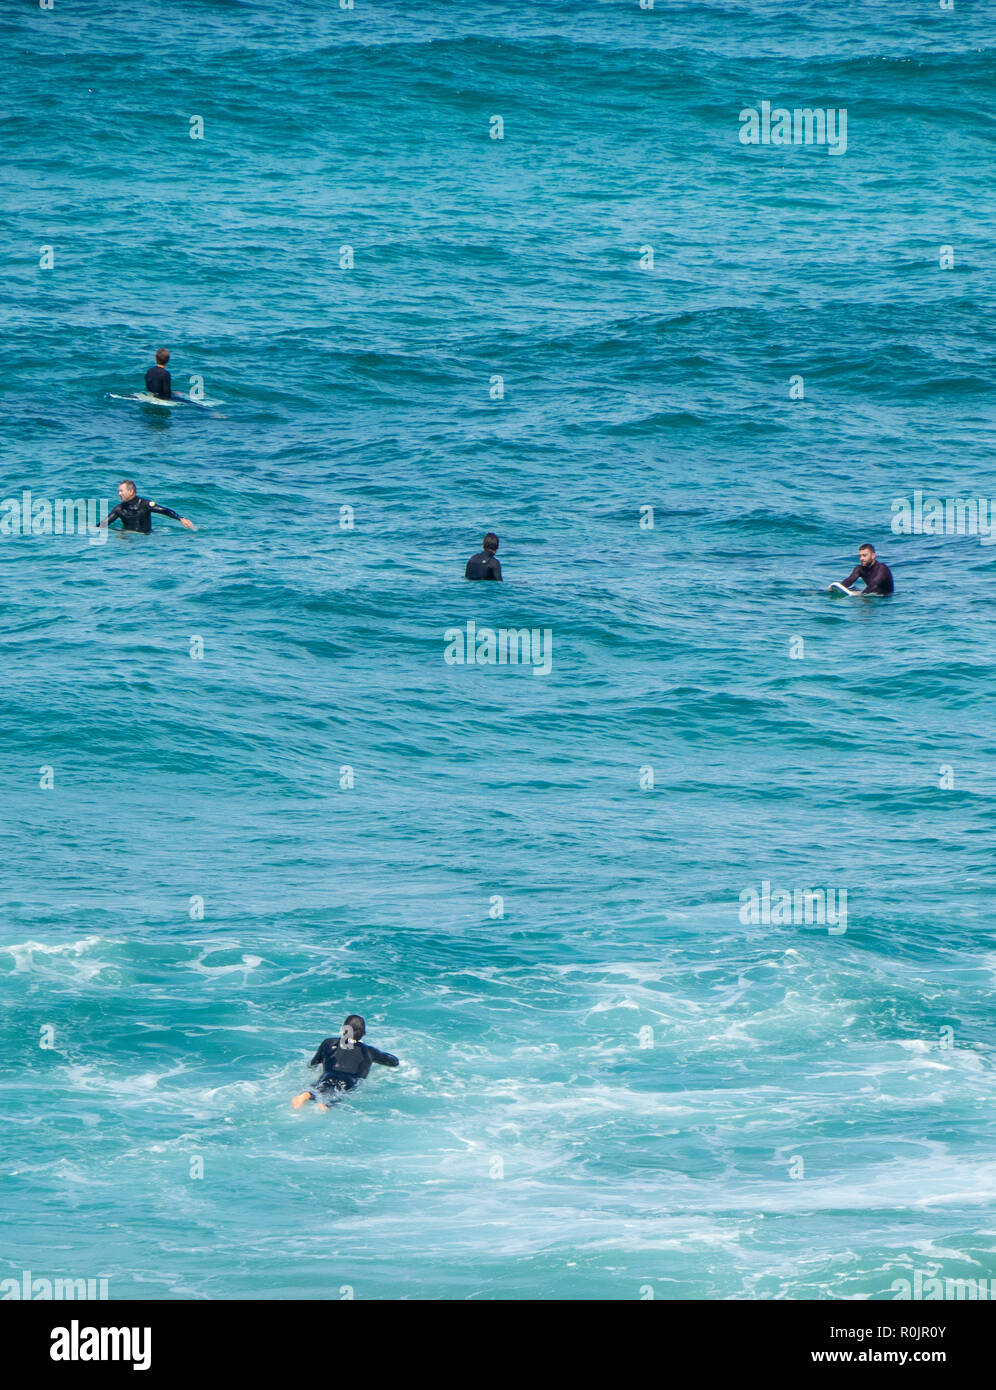 Los surfistas coger una ola en Bronte Beach Sydney, NSW, Australia. Foto de stock